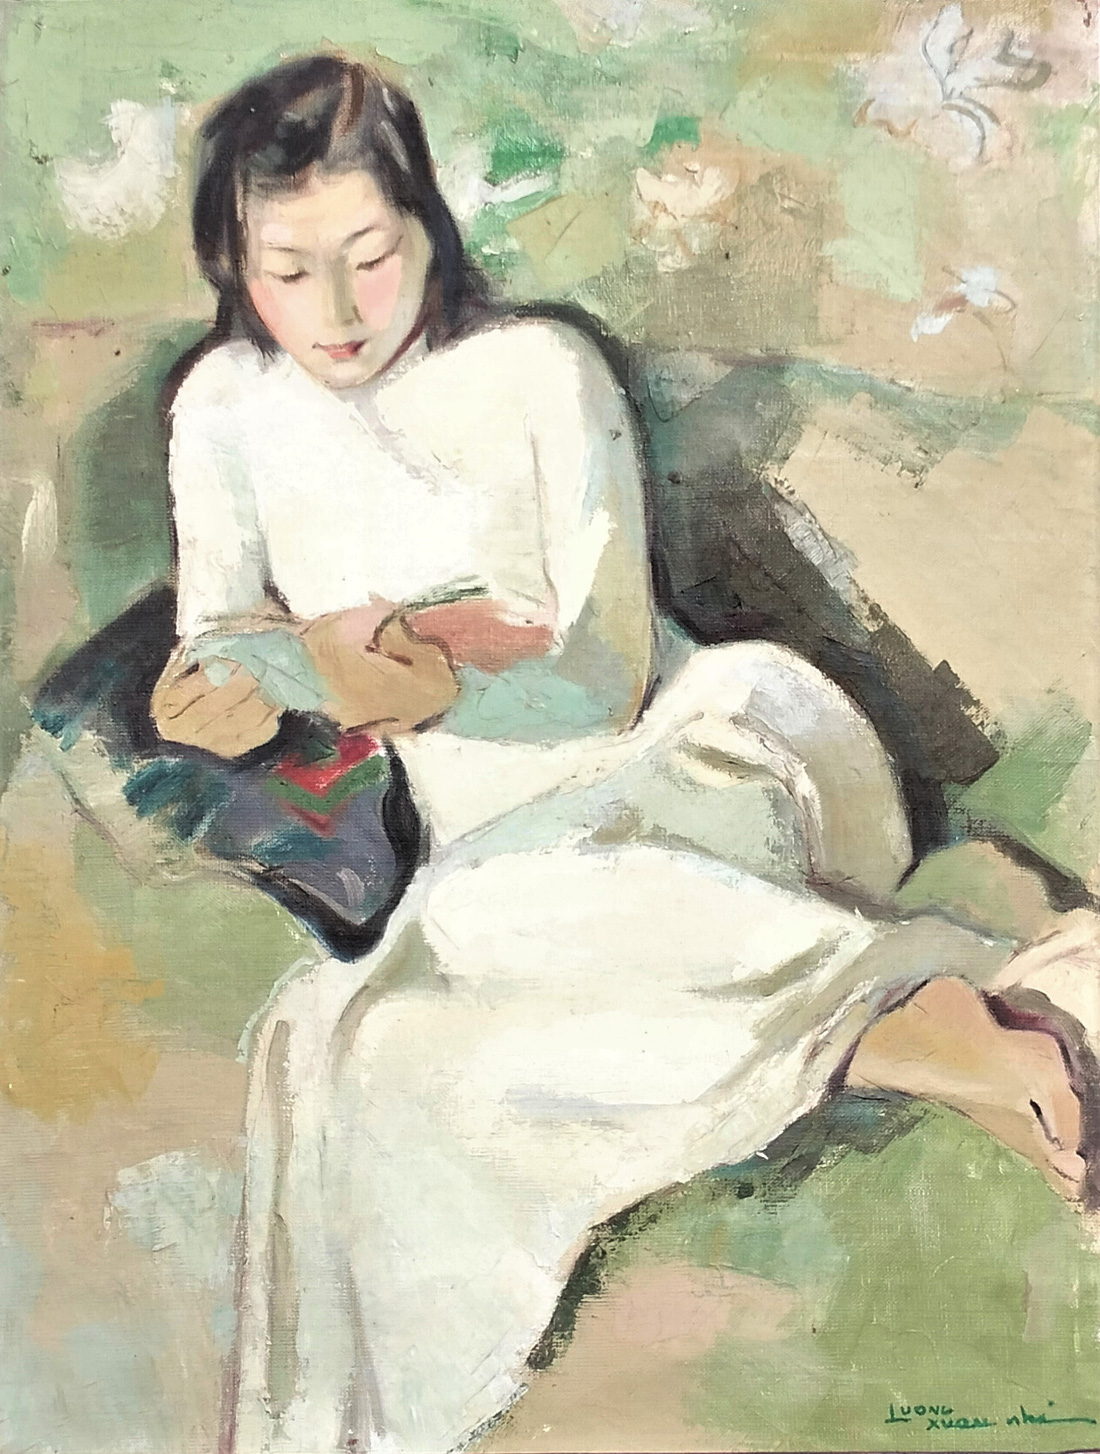 Tranh sơn dầu trên canvas &quot;Thiếu nữ đọc sách&quot; của họa sĩ Lương Xuân Nhị (1914 - 2006). Ông là giáo sư, nhà giáo nhân dân, họa sĩ nổi tiếng với những bức chân dung thiếu nữ và phong cảnh, sinh hoạt bình dị.